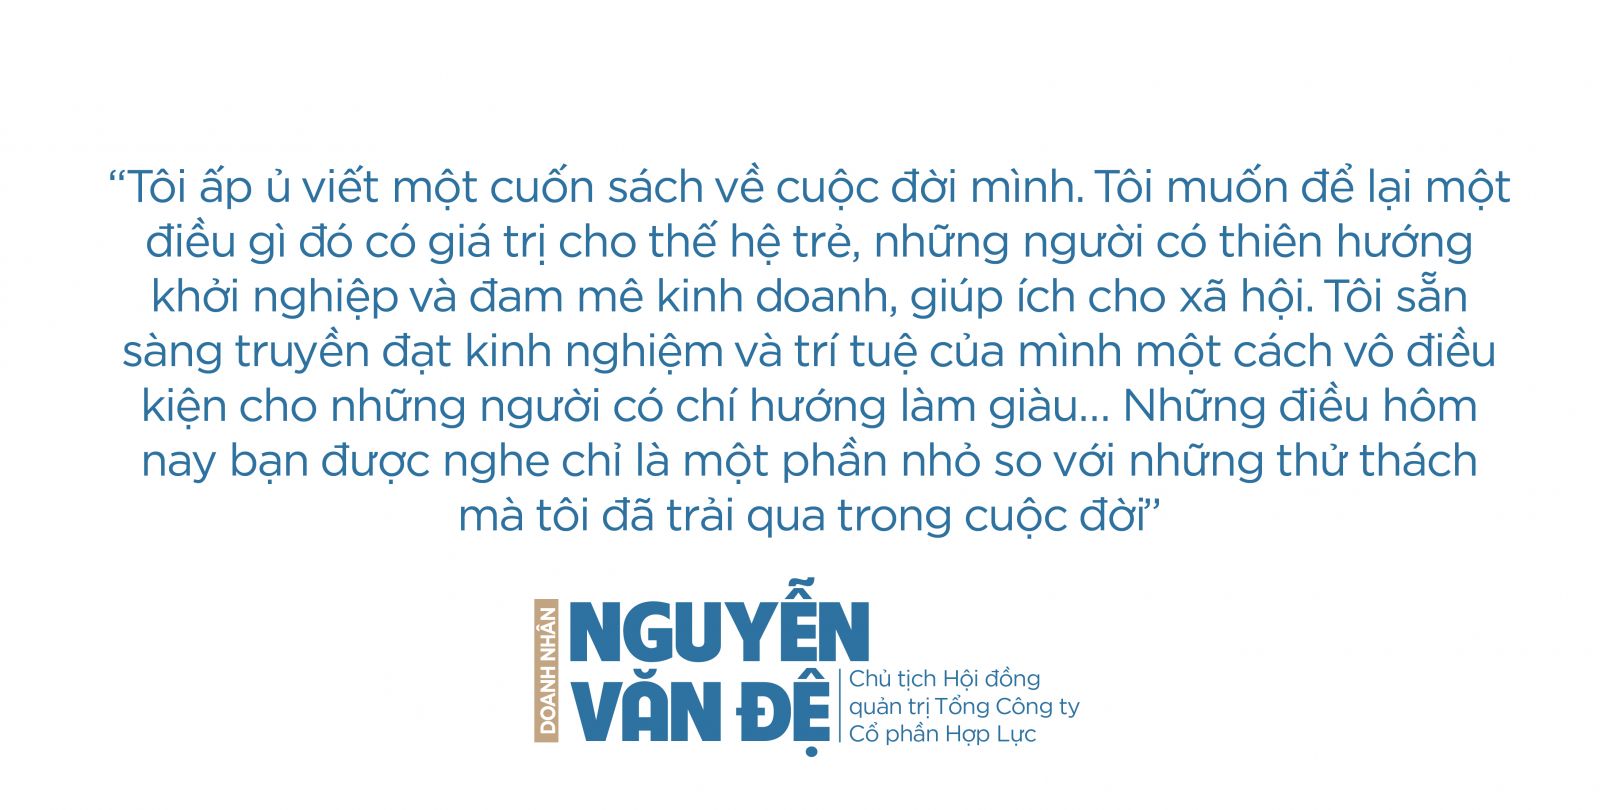 Doanh nhân Nguyễn Văn Đệ